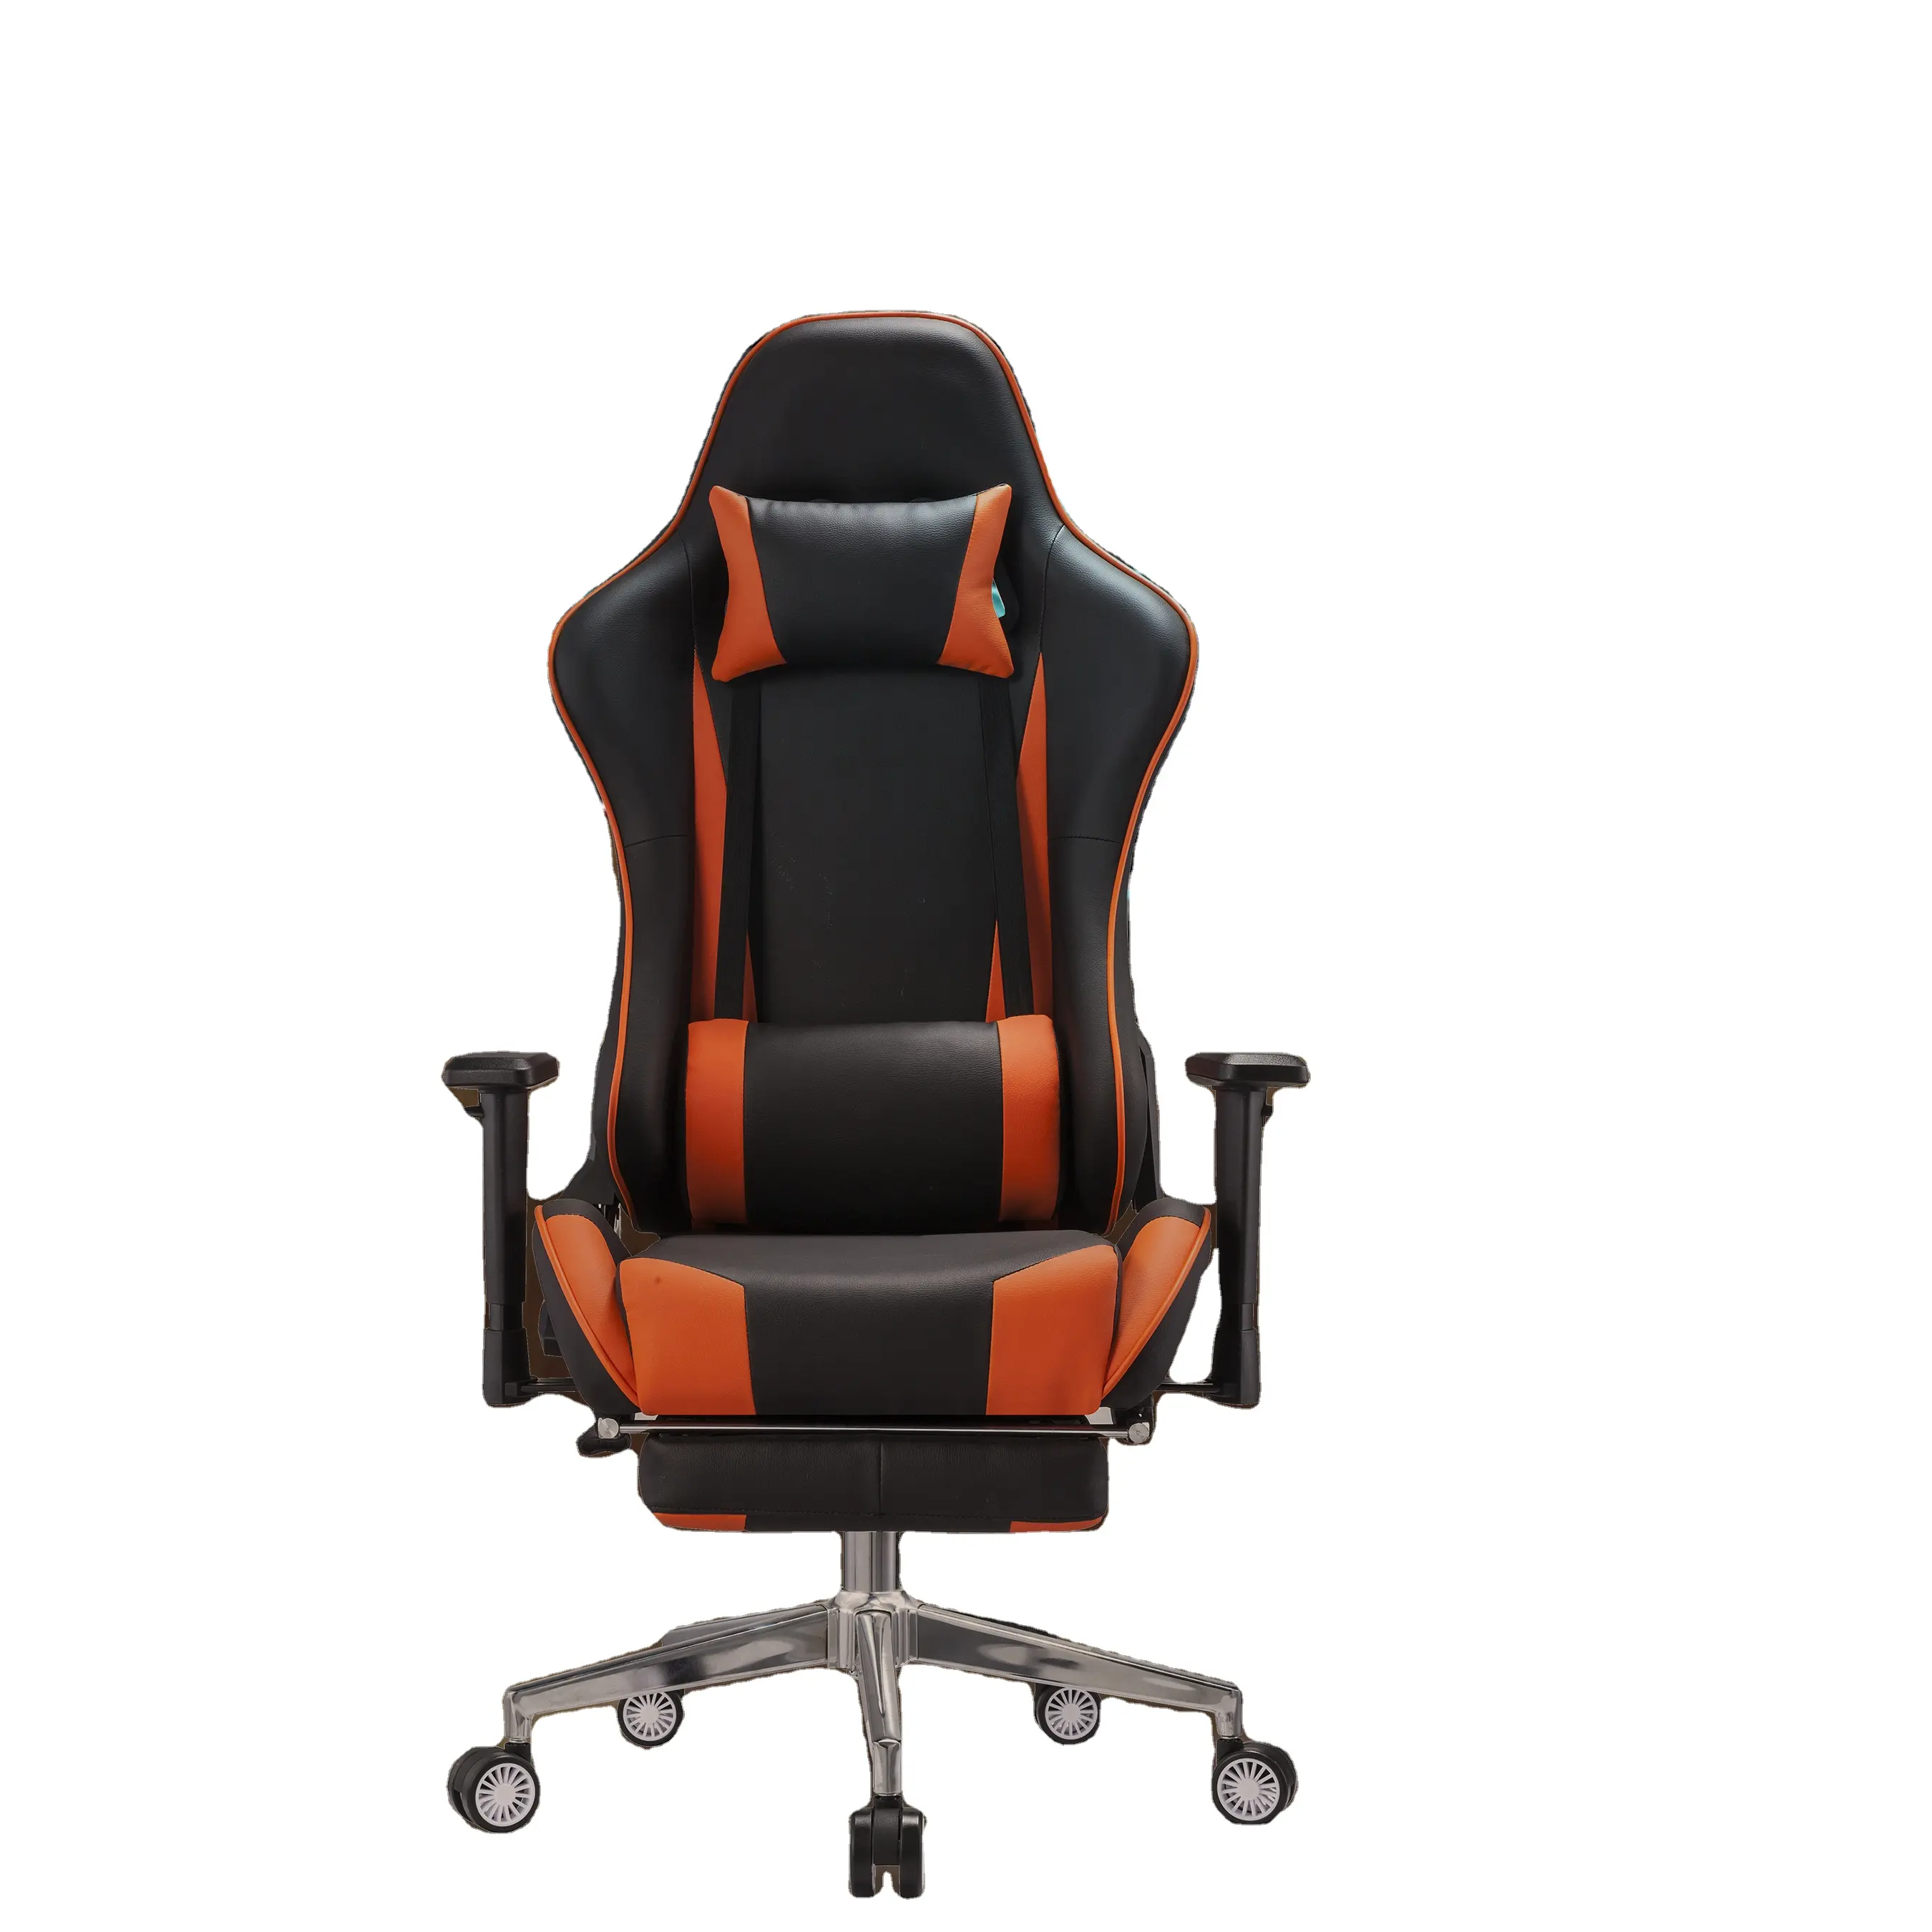 Commercio all'ingrosso della fabbrica della Cina reclinabile Computer Racing PC sedie girevoli Gamer Gamer sedia